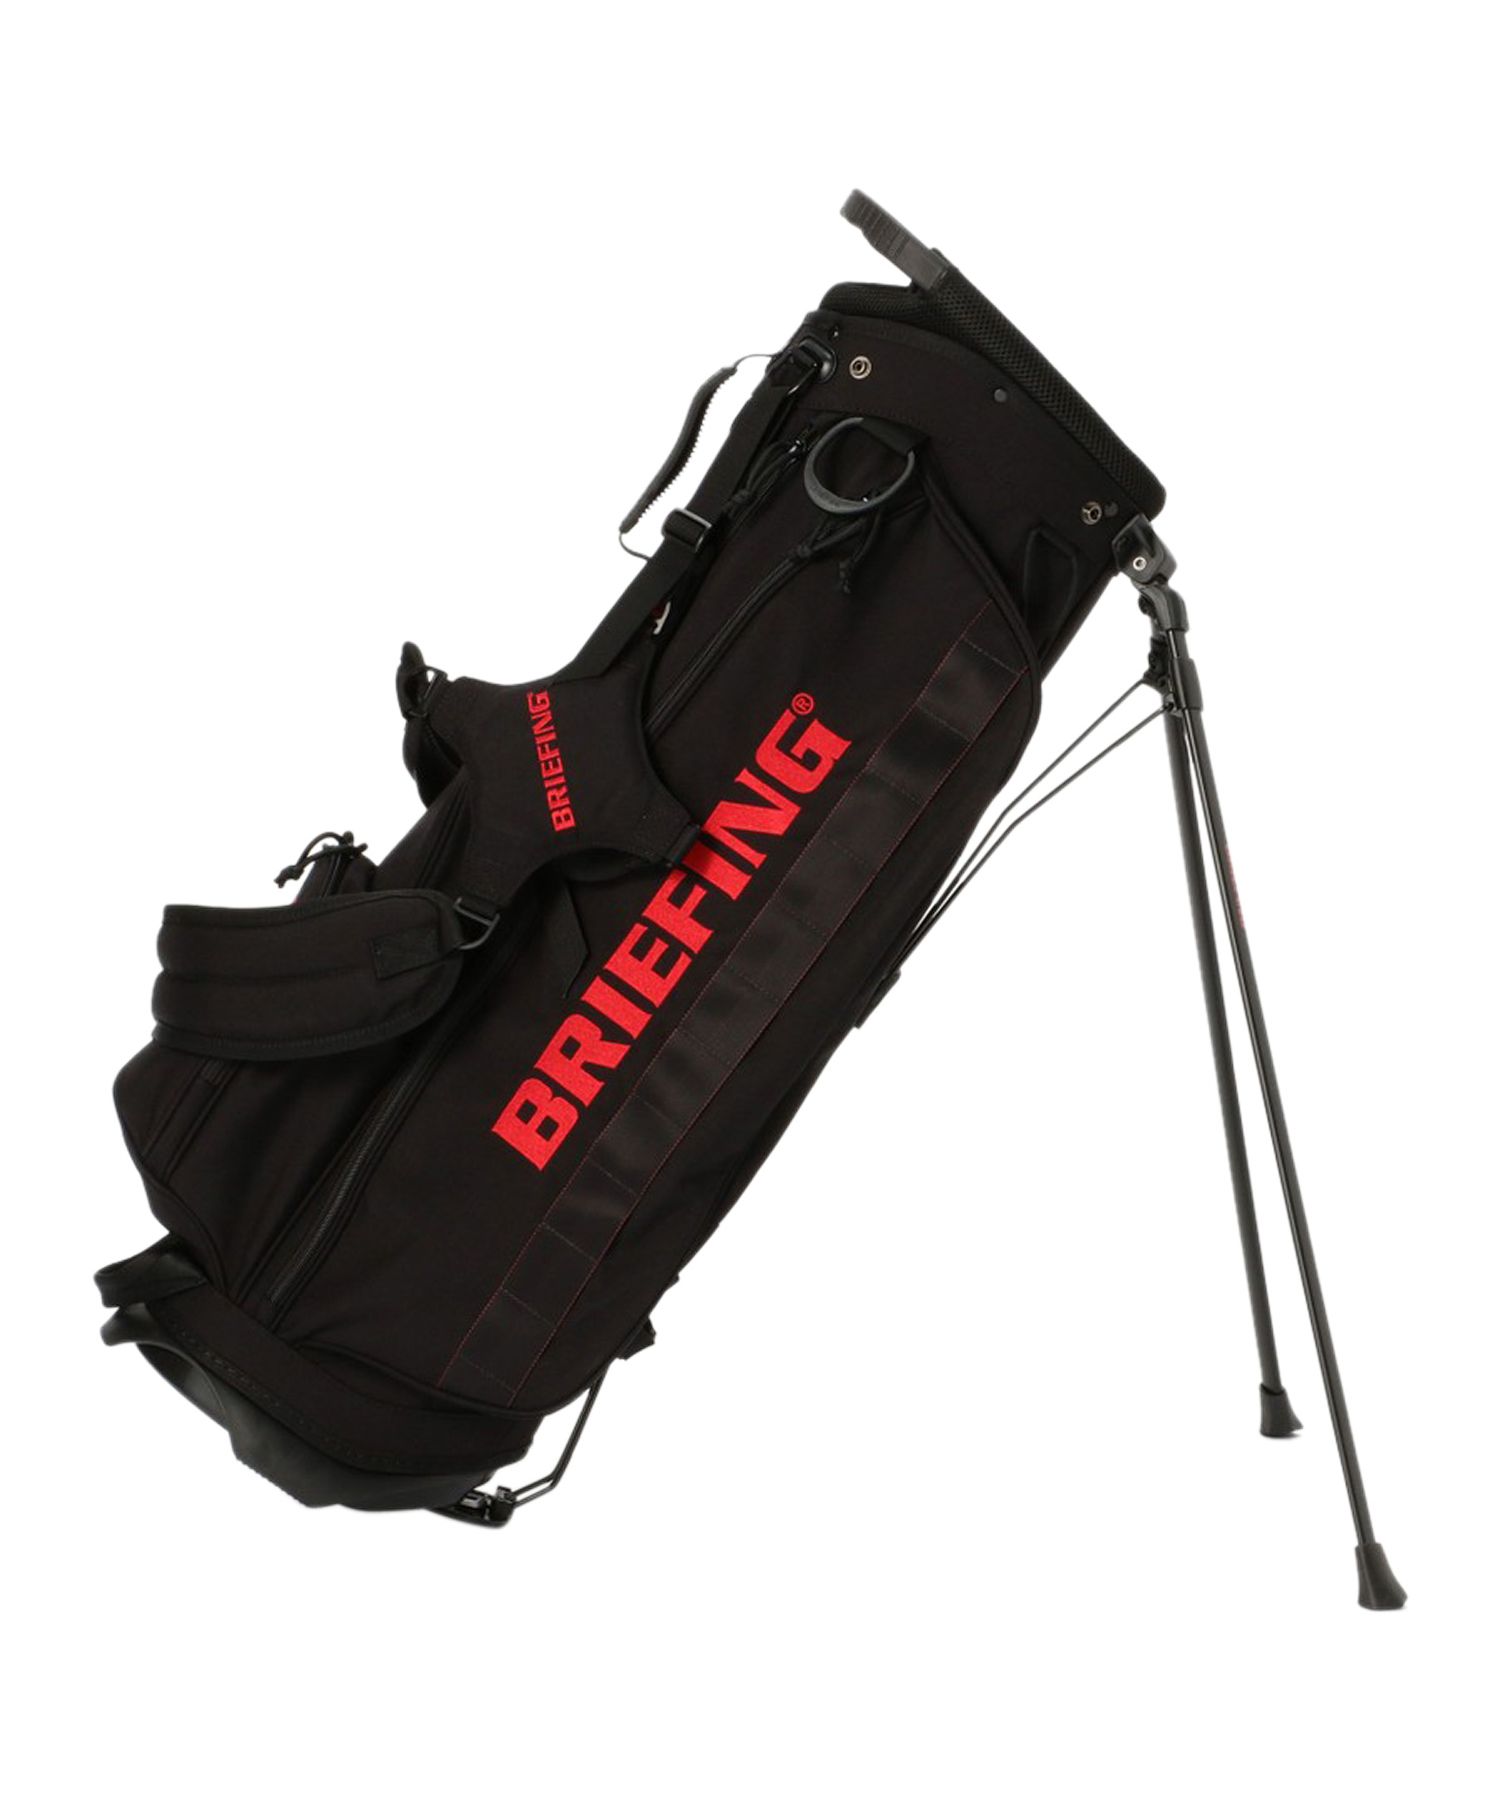 ブリーフィング BRIEFING ゴルフ バッグ キャディバッグ ゴルフバッグ メンズ レディース 軽量 スタンド 撥水 CR－4 #02 ブラック  ネイビー